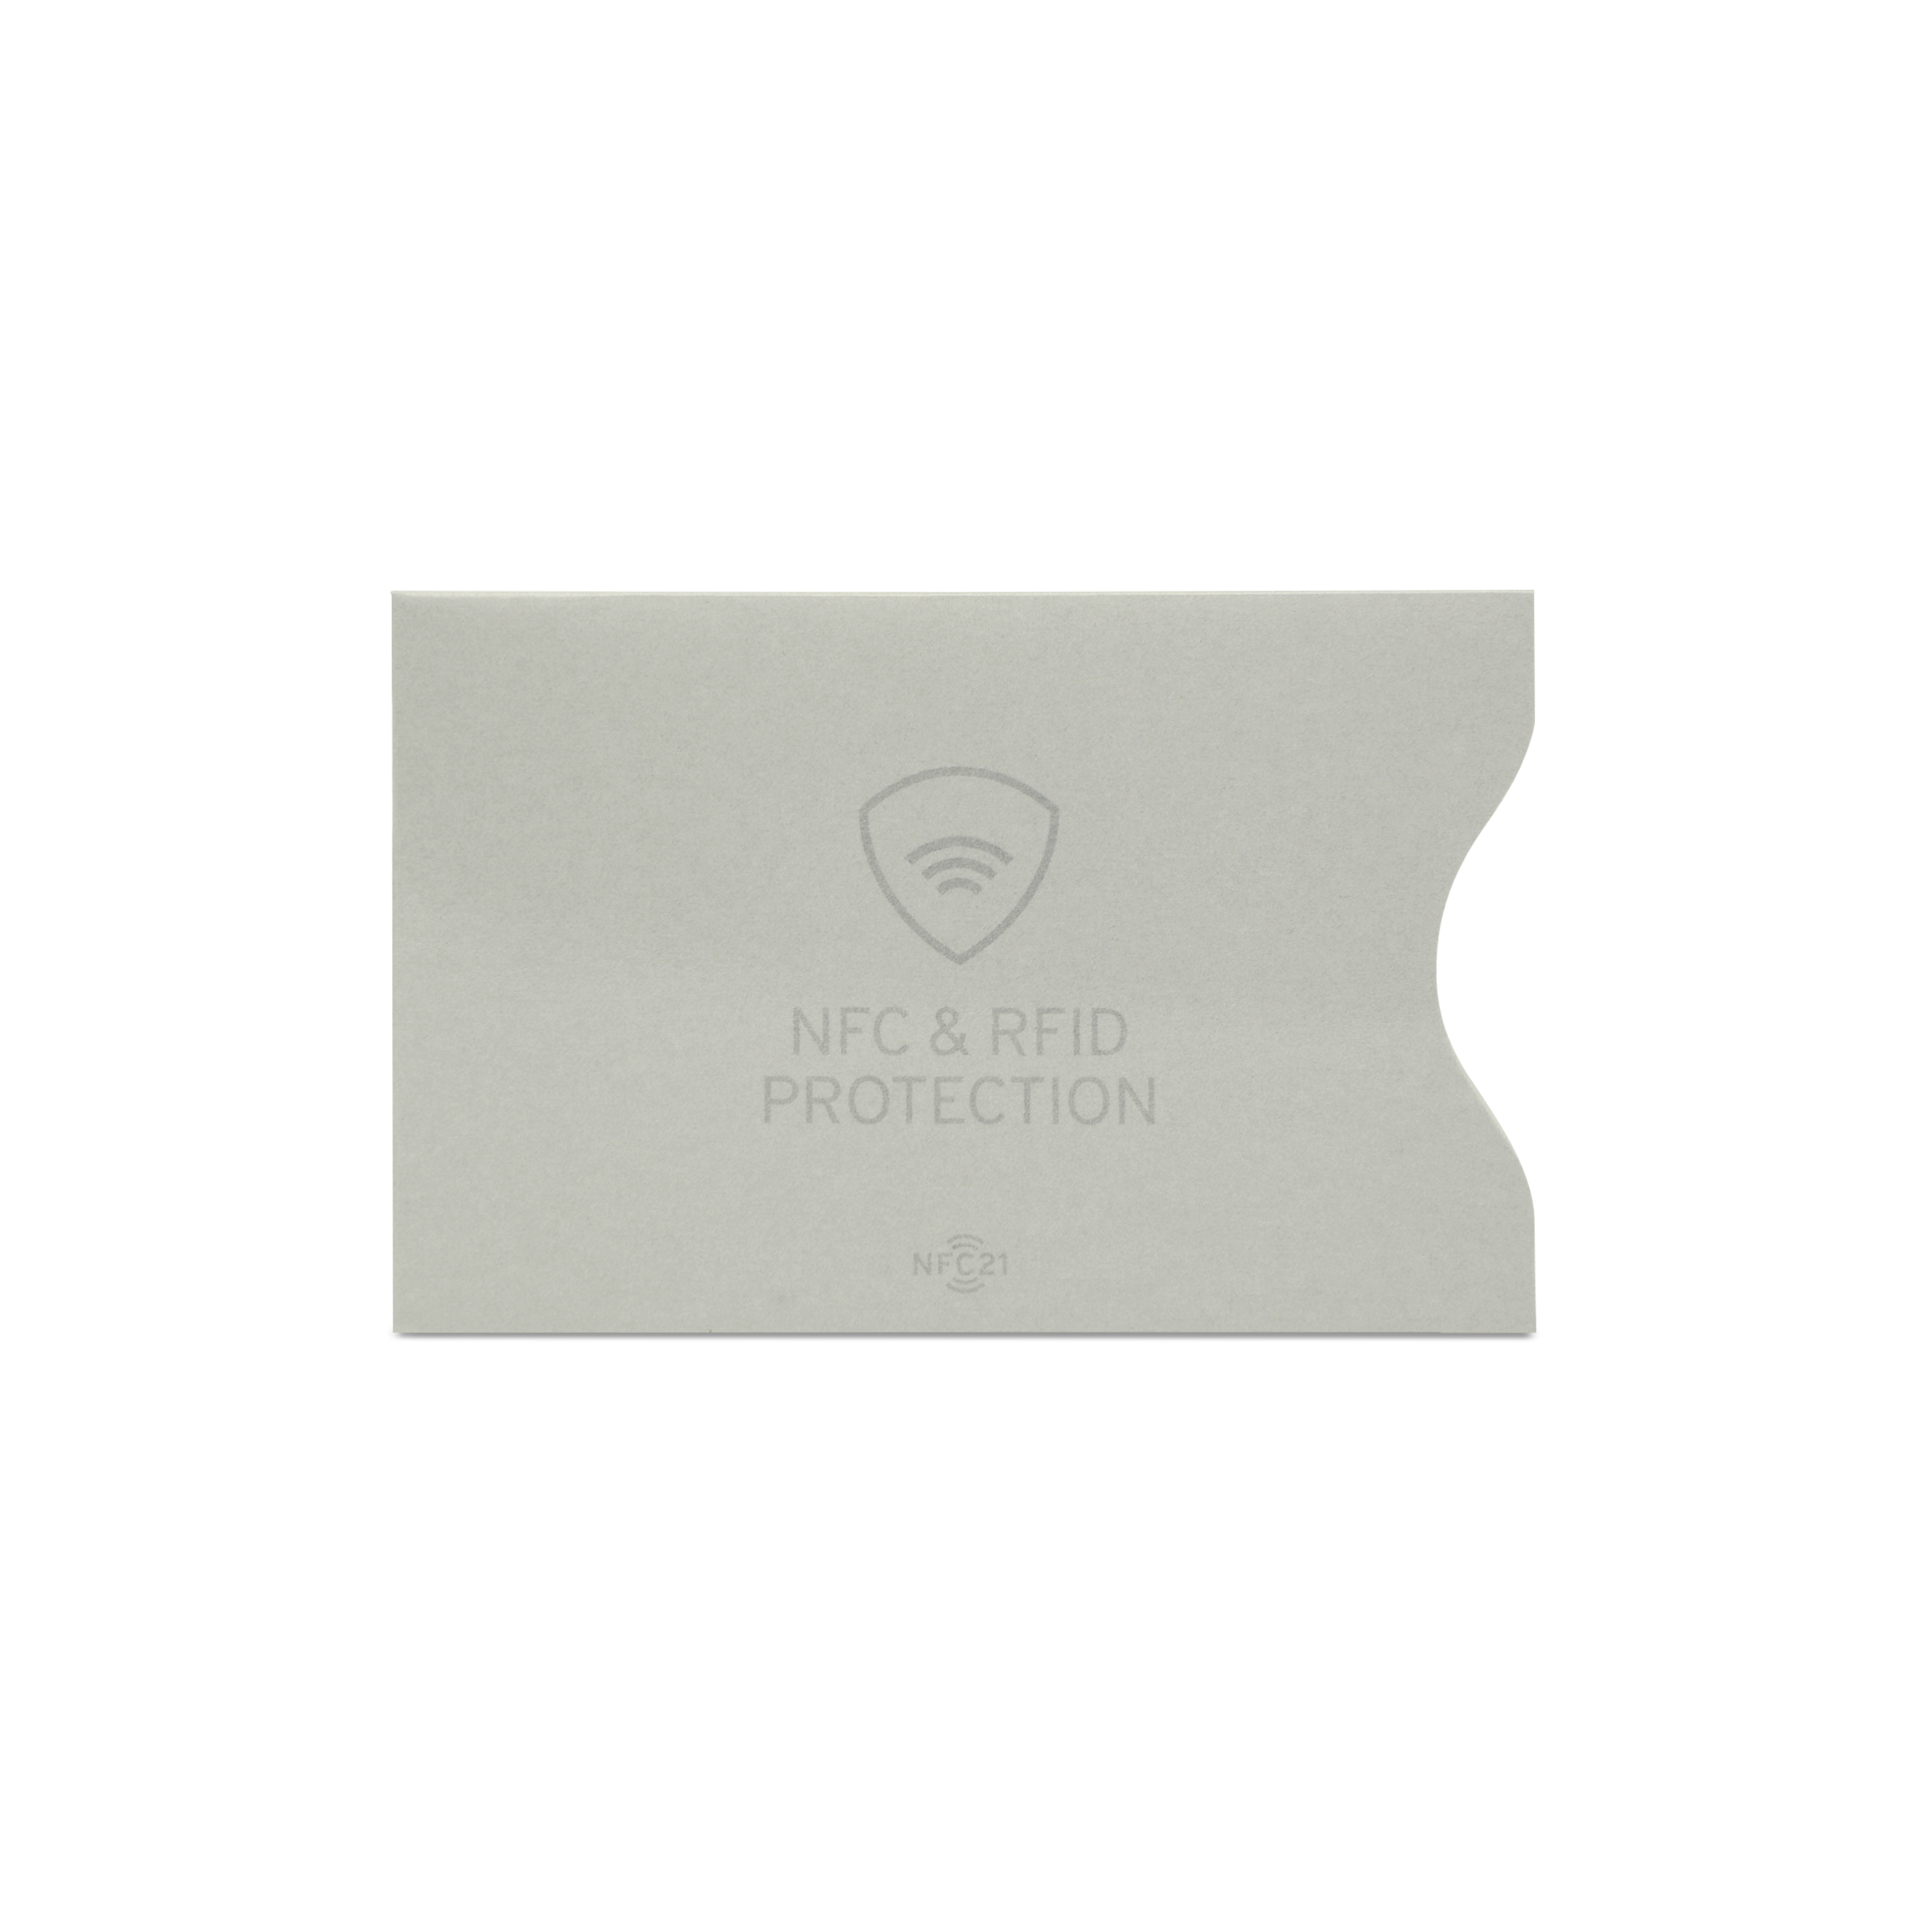 NFC- & RFID-Karten Schutzhülle − 90 x 60 mm − grau